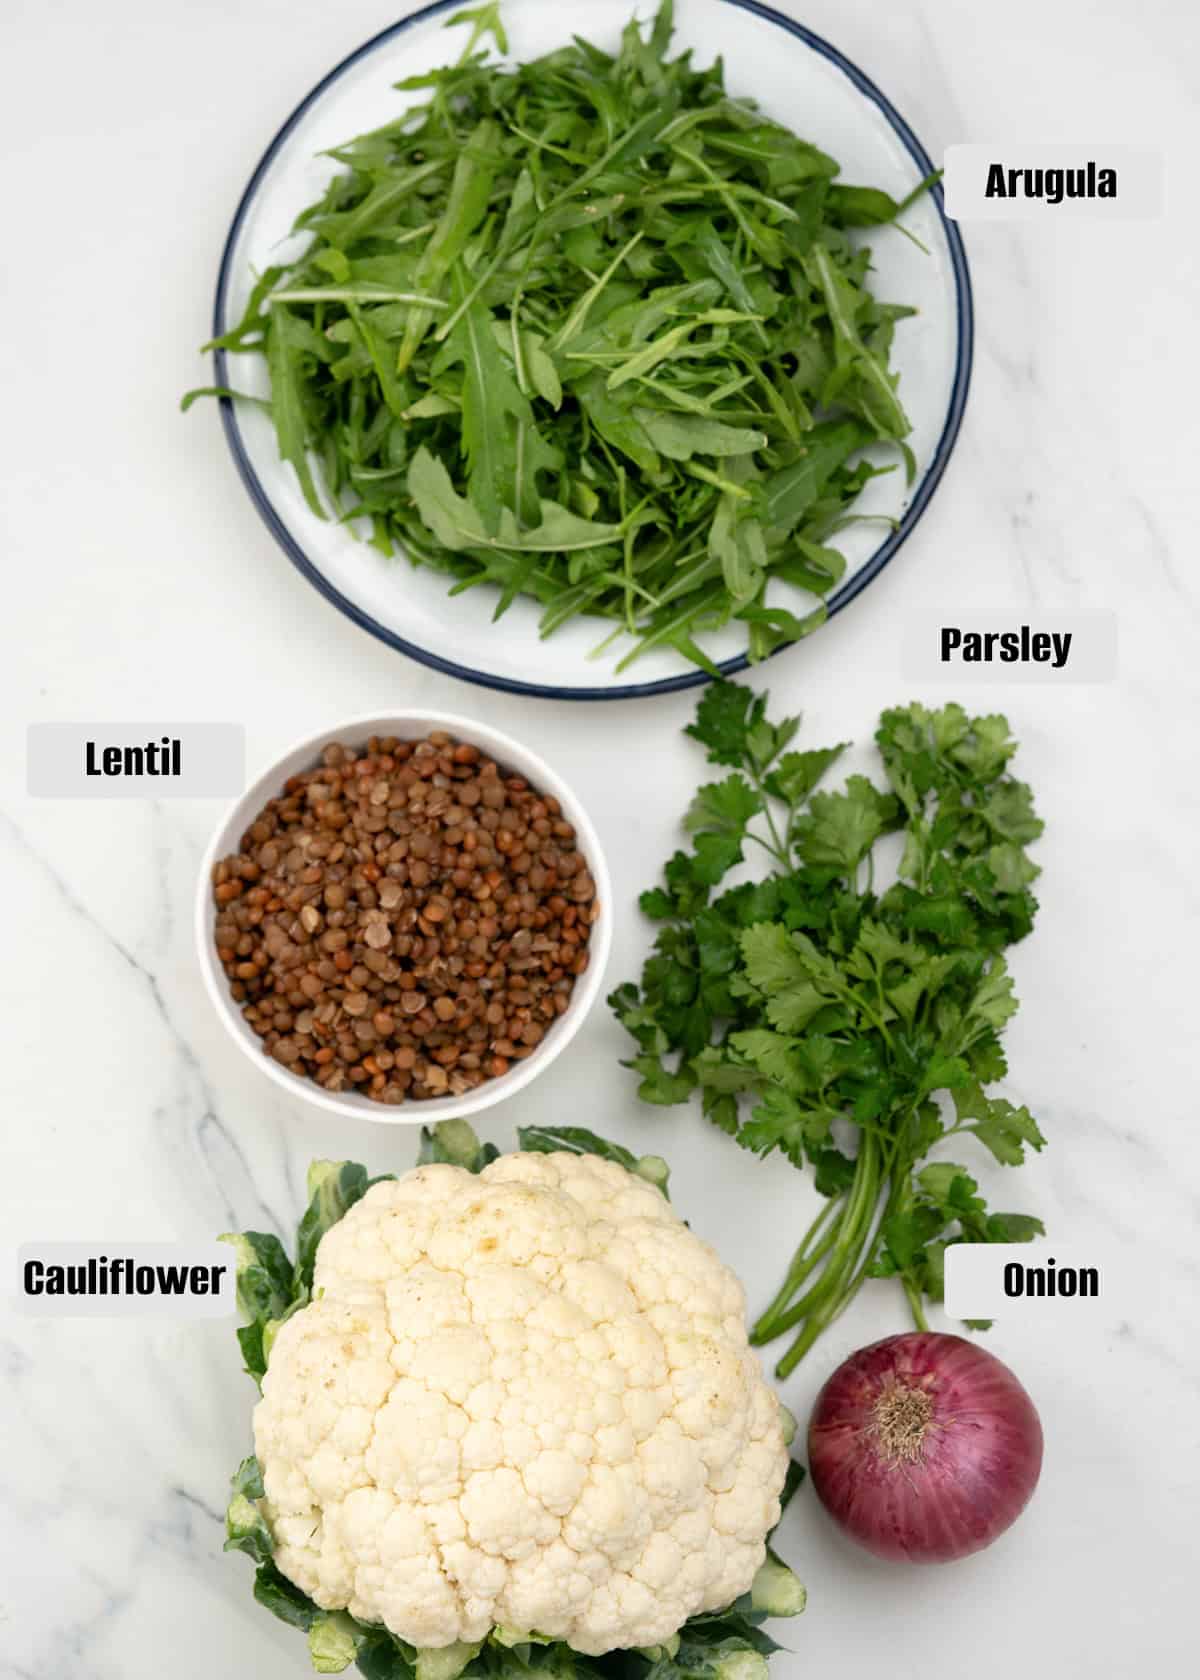 Ingredients for cauliflower salad